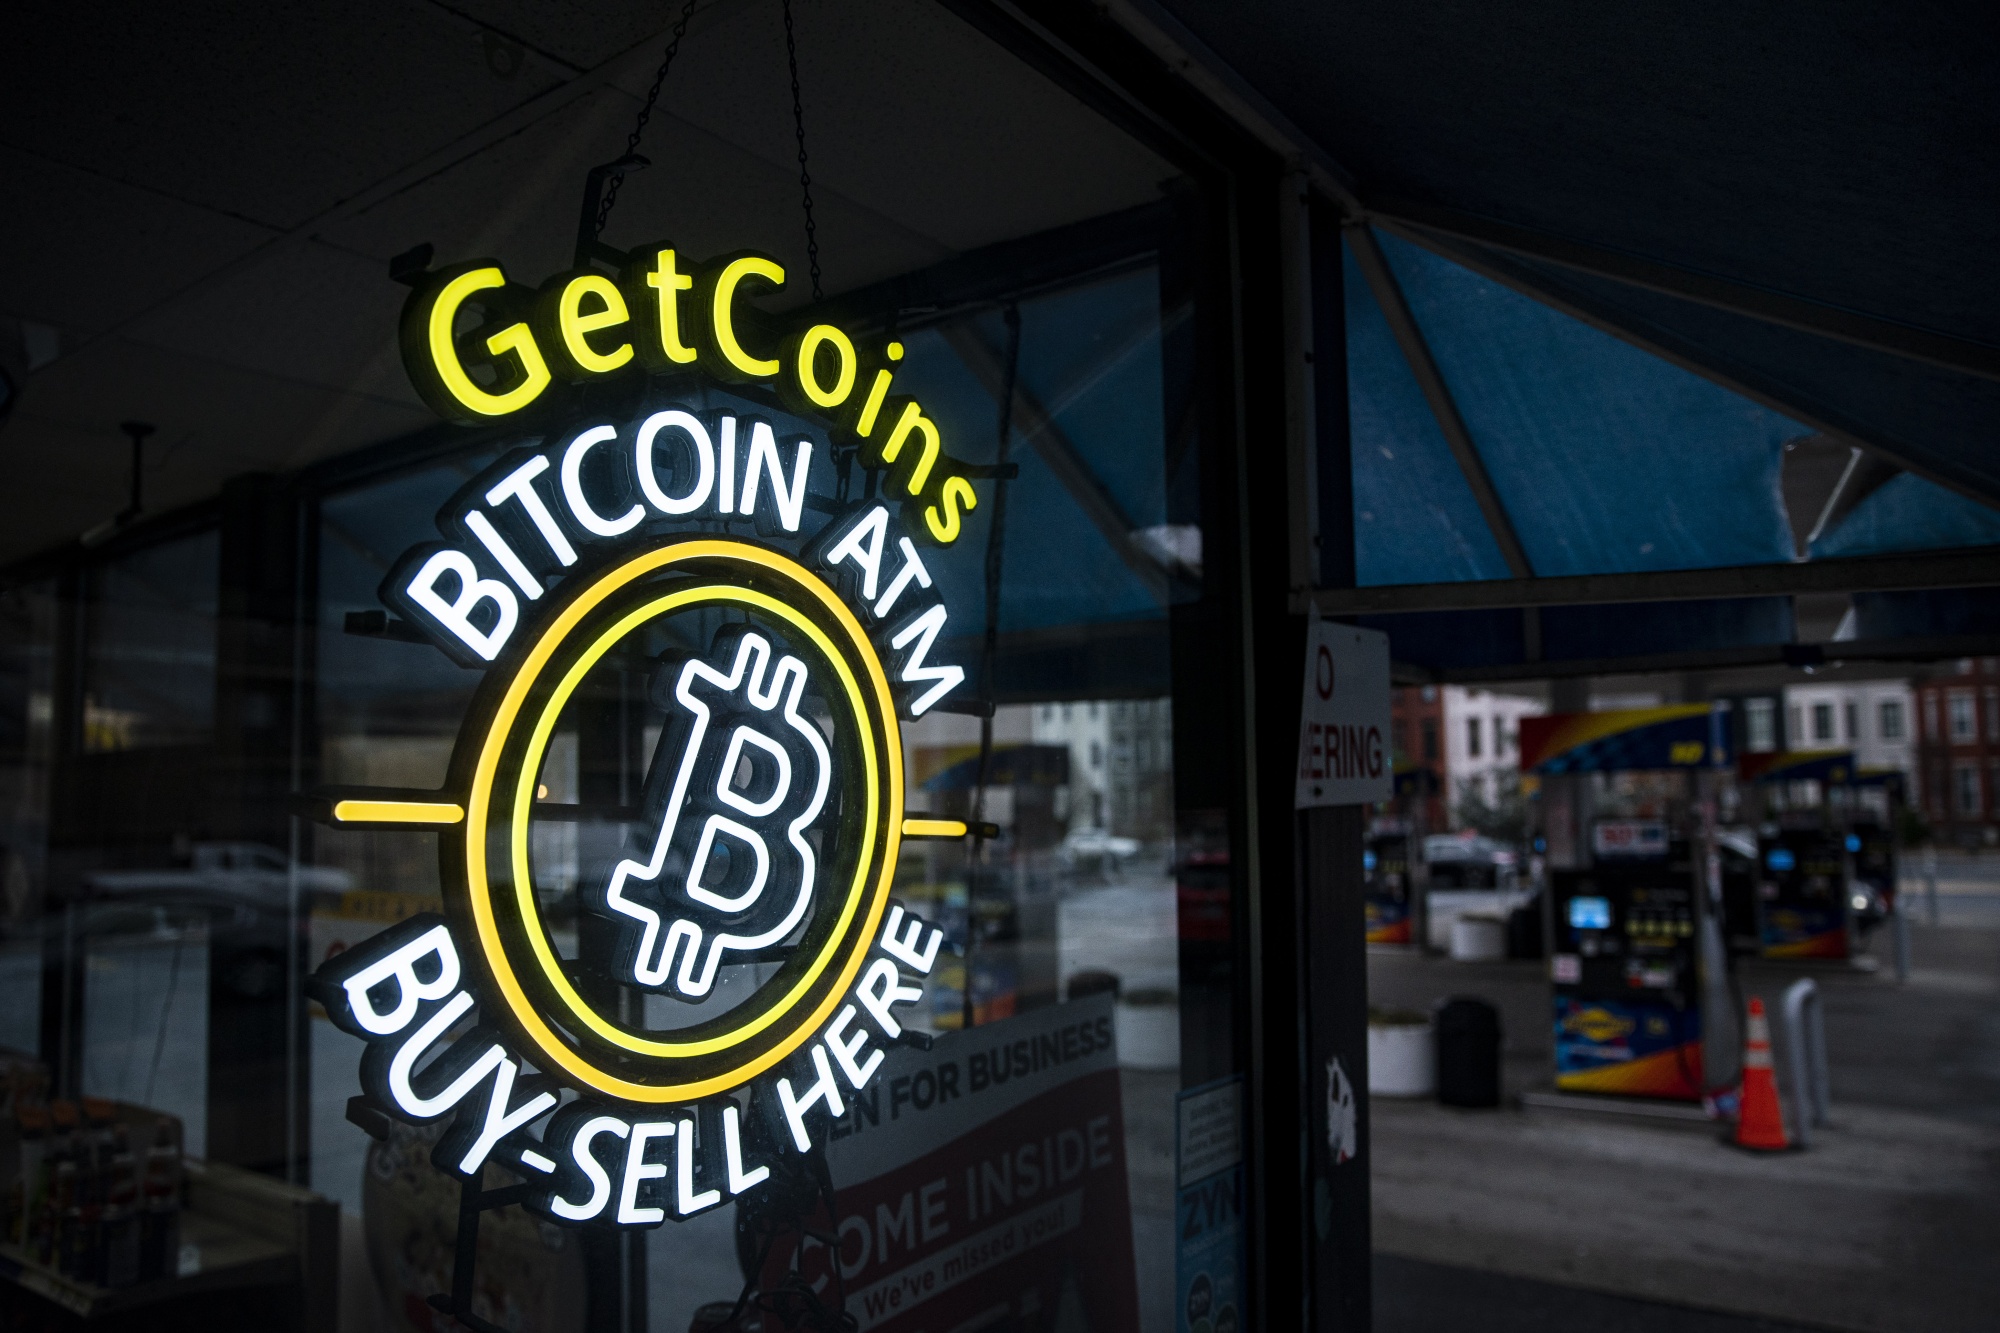 CEO tiền điện tử bị xử phạt 3.4 tỷ USD do gian lận chiếm đoạt Bitcoin